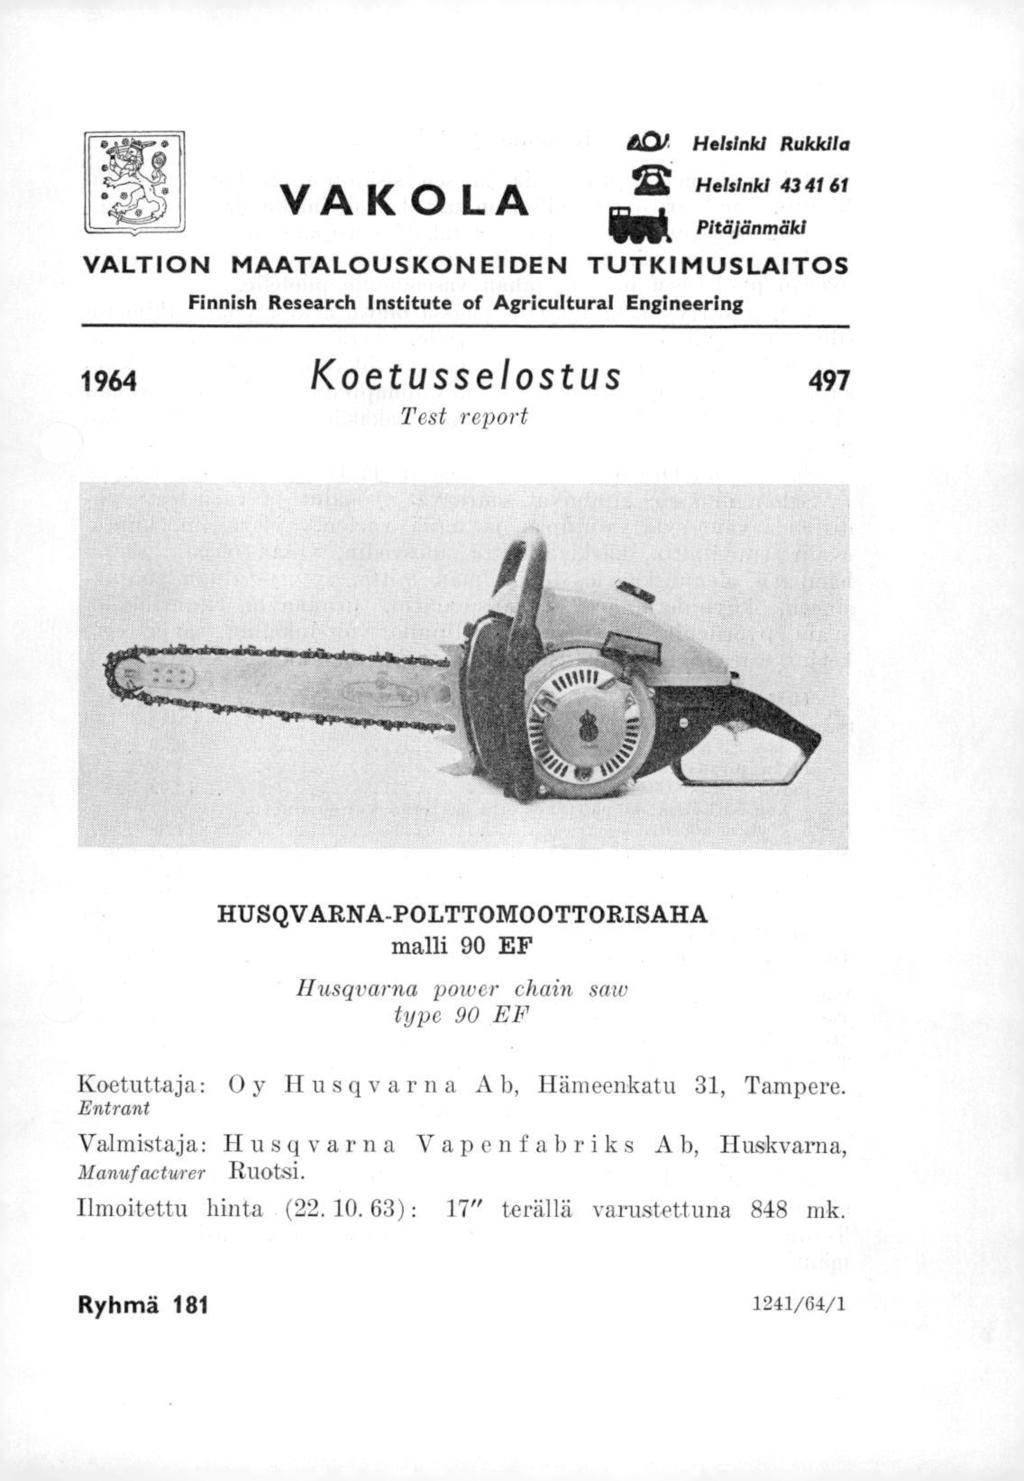 VA K 0 LA 40, Helsinki Rukkila Helsinki 43 41 61 Pitäjänmäki VALTION MAATALOUSKONEIDEN TUTKIMUSLAITOS Finnish Research Institute of Agricultural Engineering 1964 Koetusselostus 497 Test report "e.